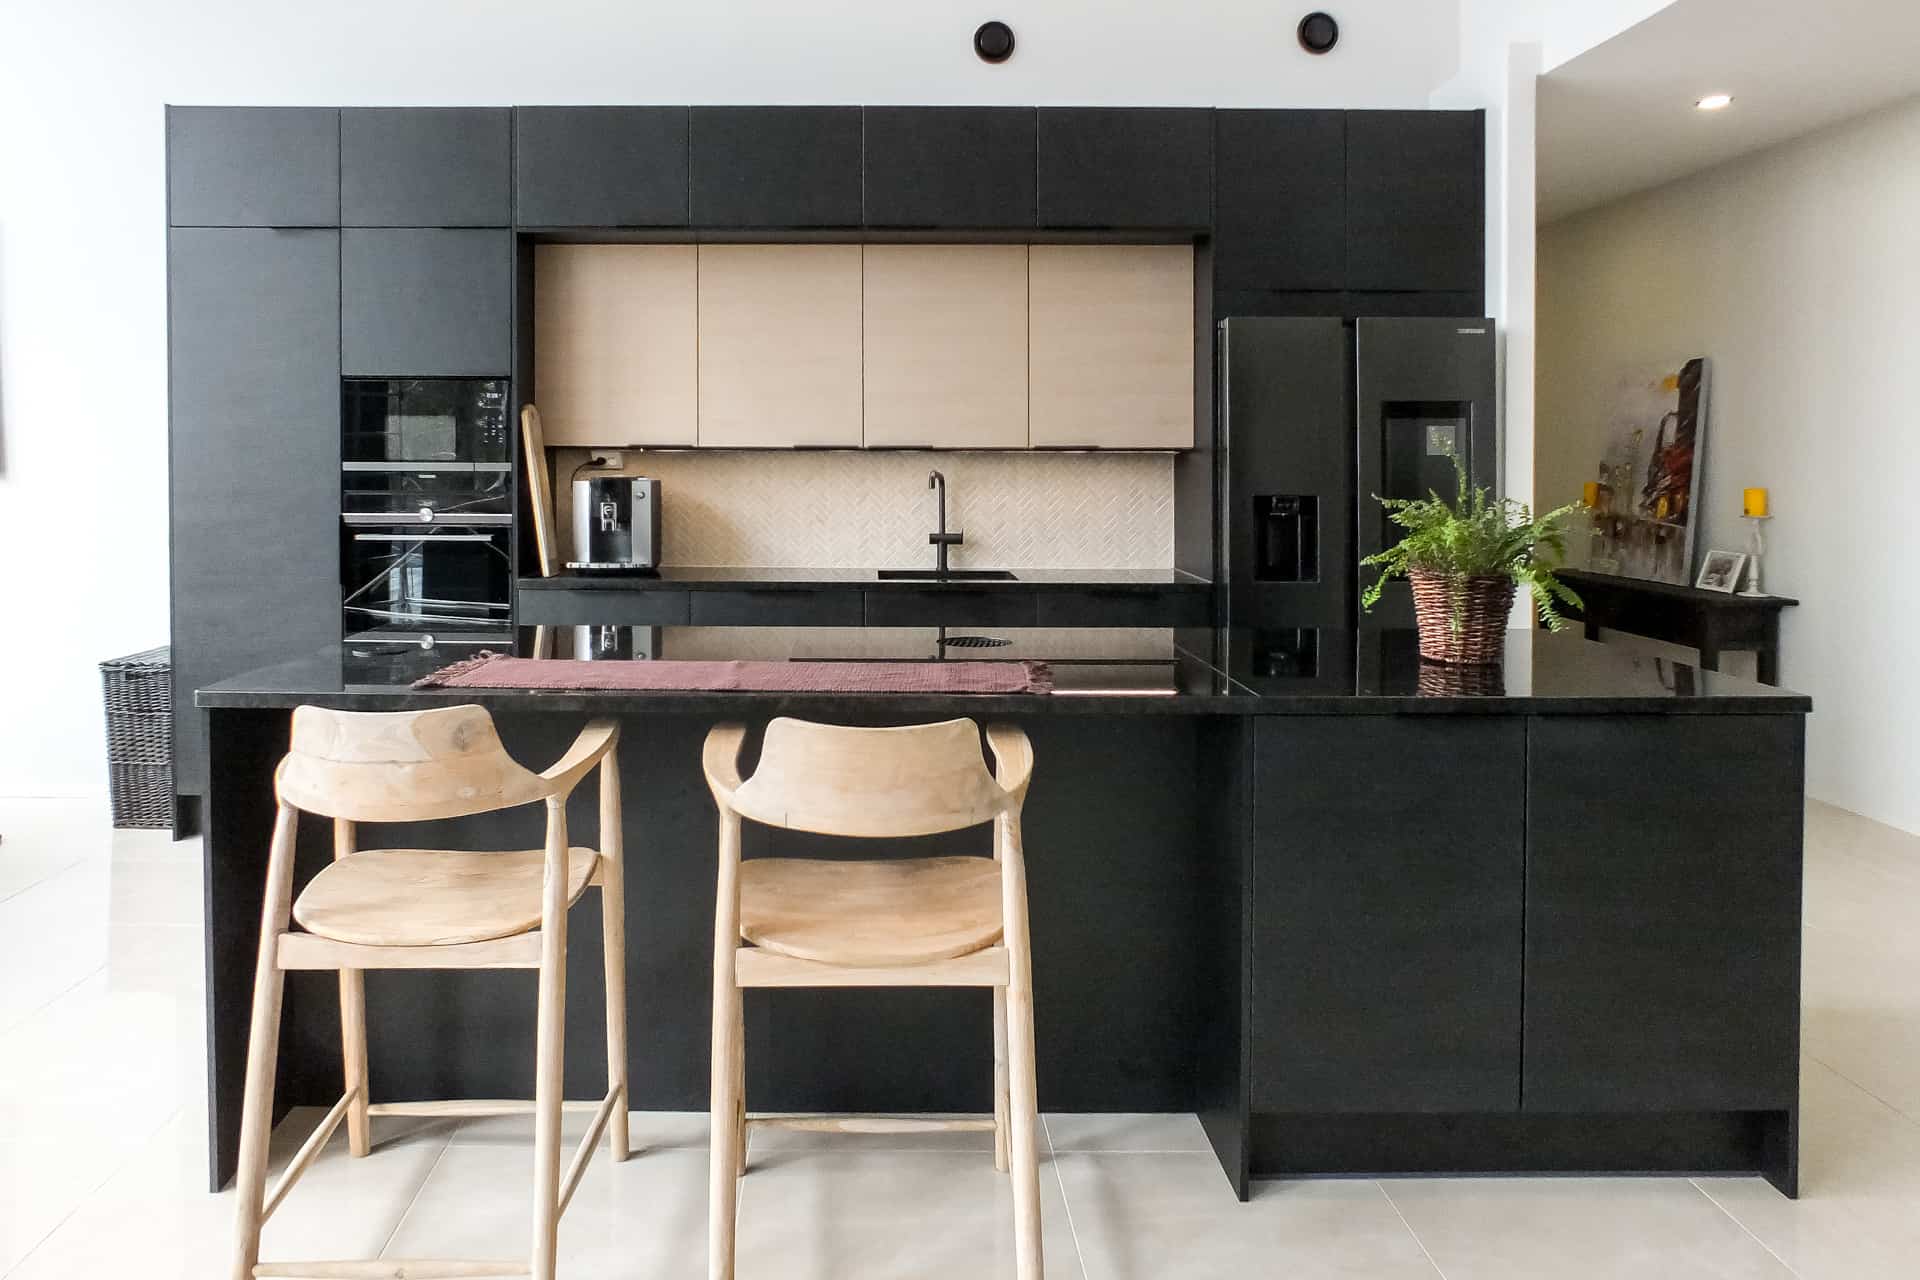 Puustelli Black Kitchen Cabinets 